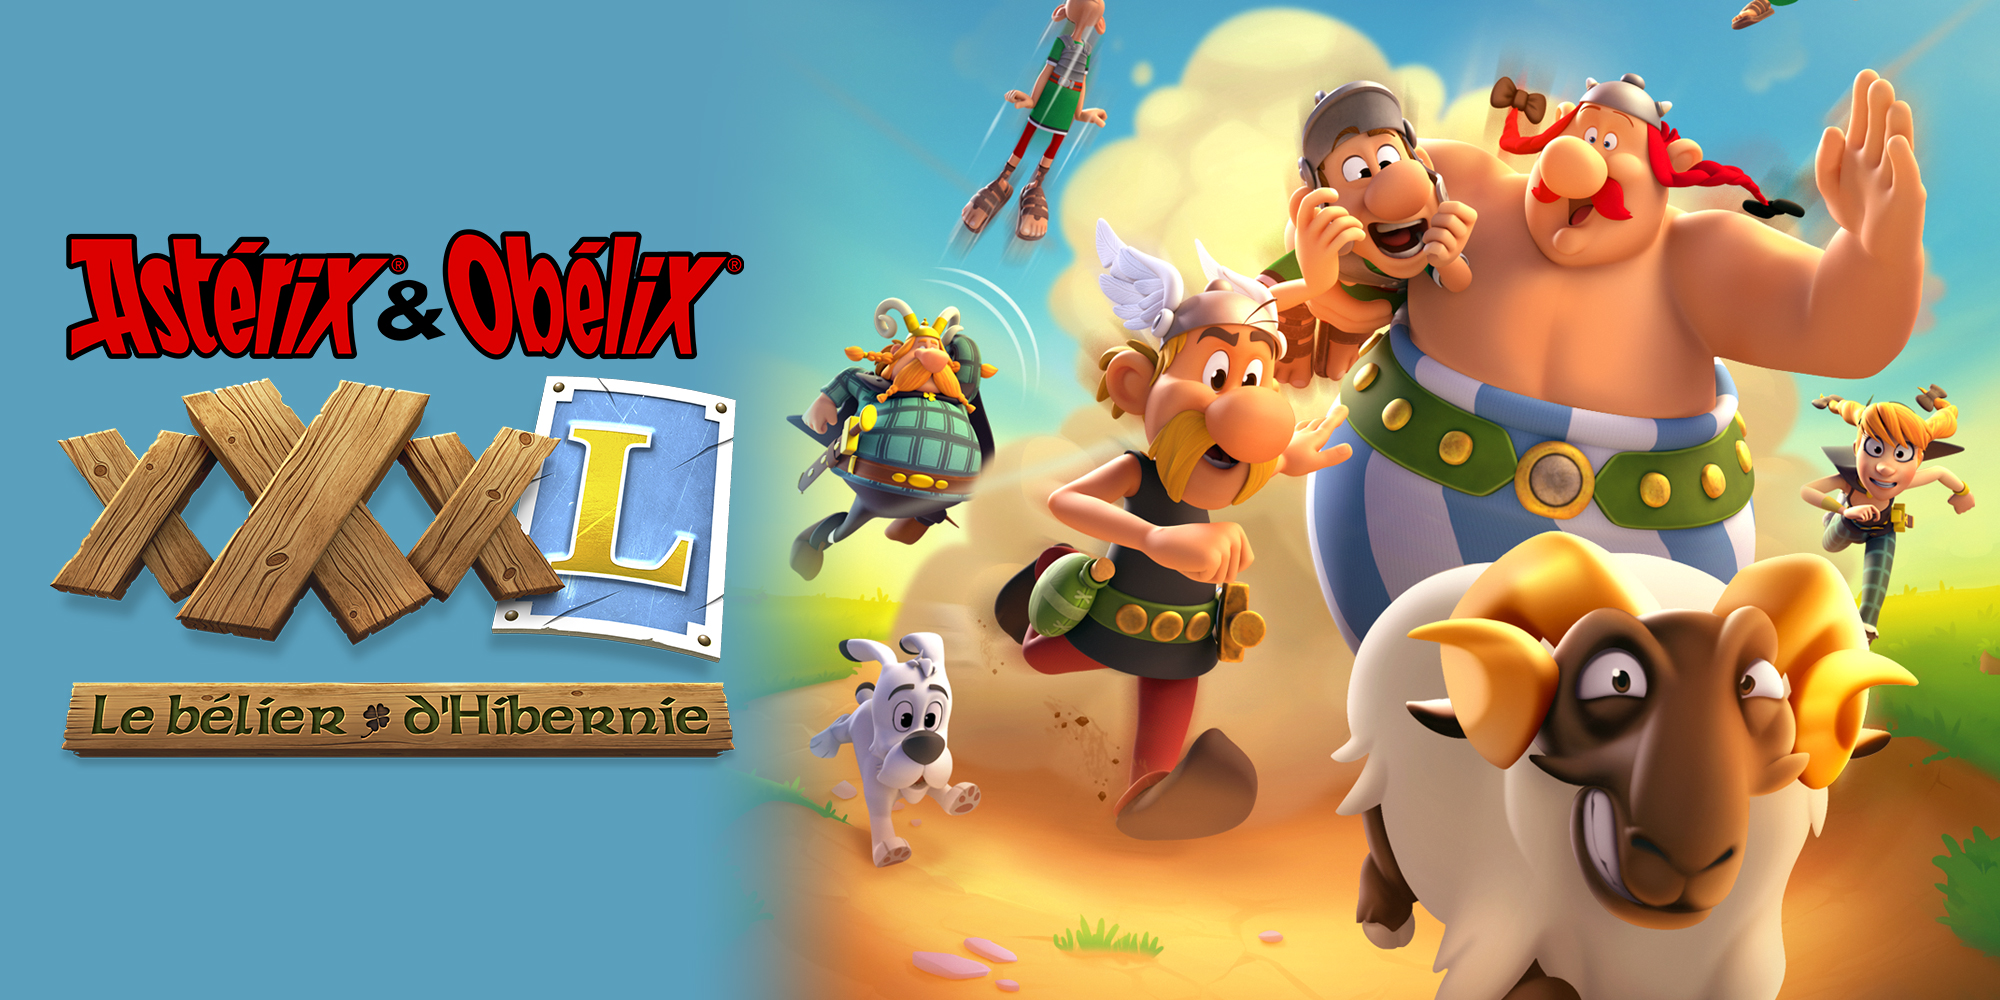 Astérix & Obélix XXXL – Le Bélier d'Hibernie, Jeux Nintendo Switch, Jeux